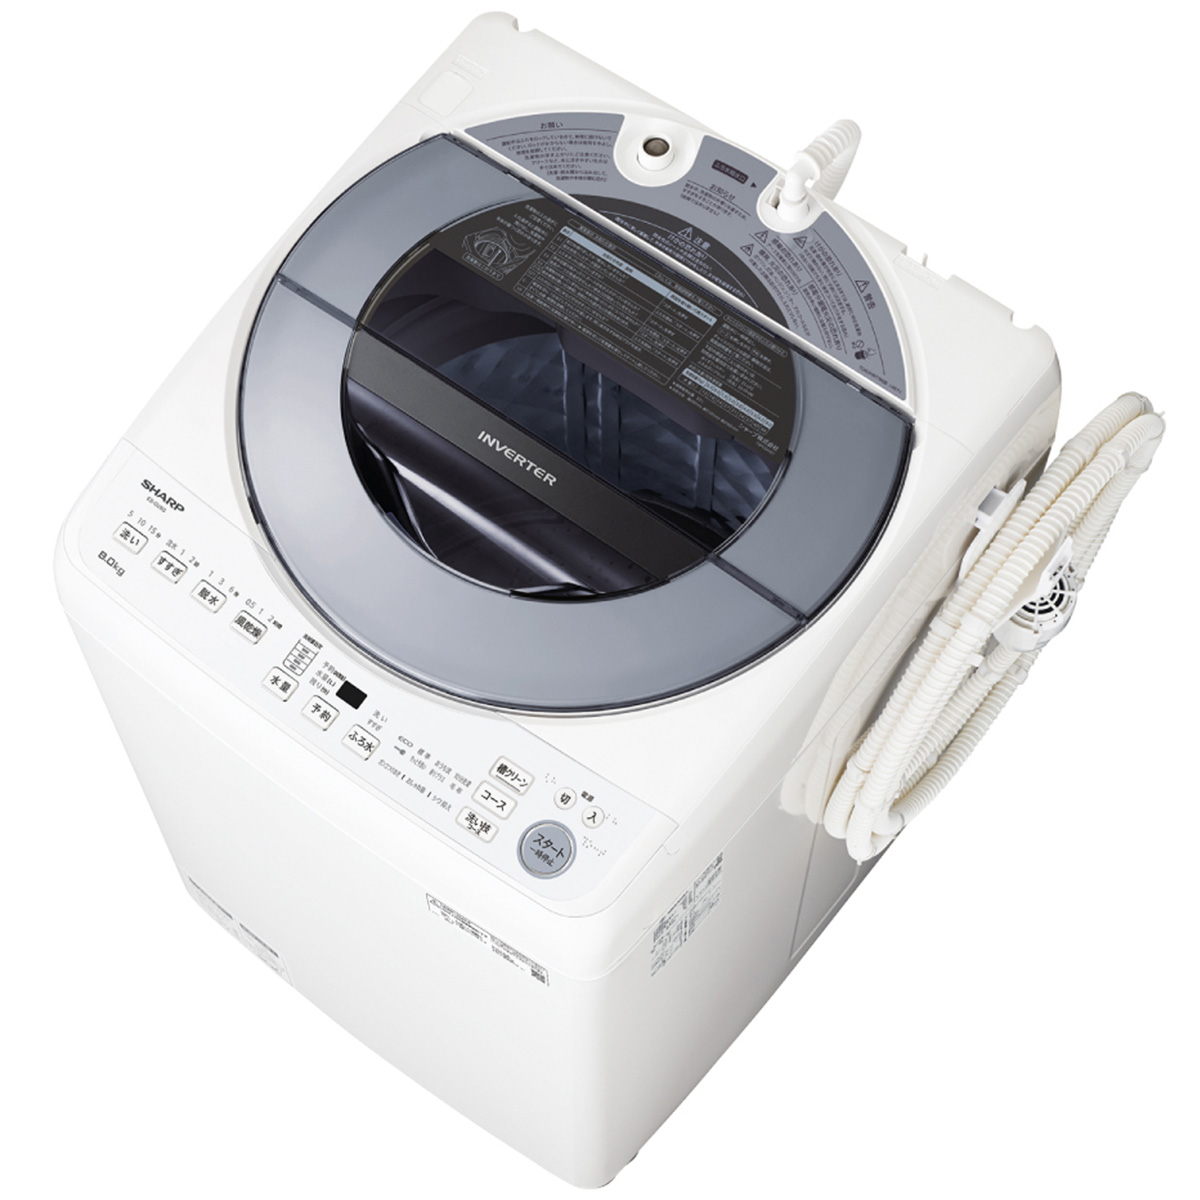 SHARP 全自動洗濯機(8kg) シルバー系 ES-GV8G-S